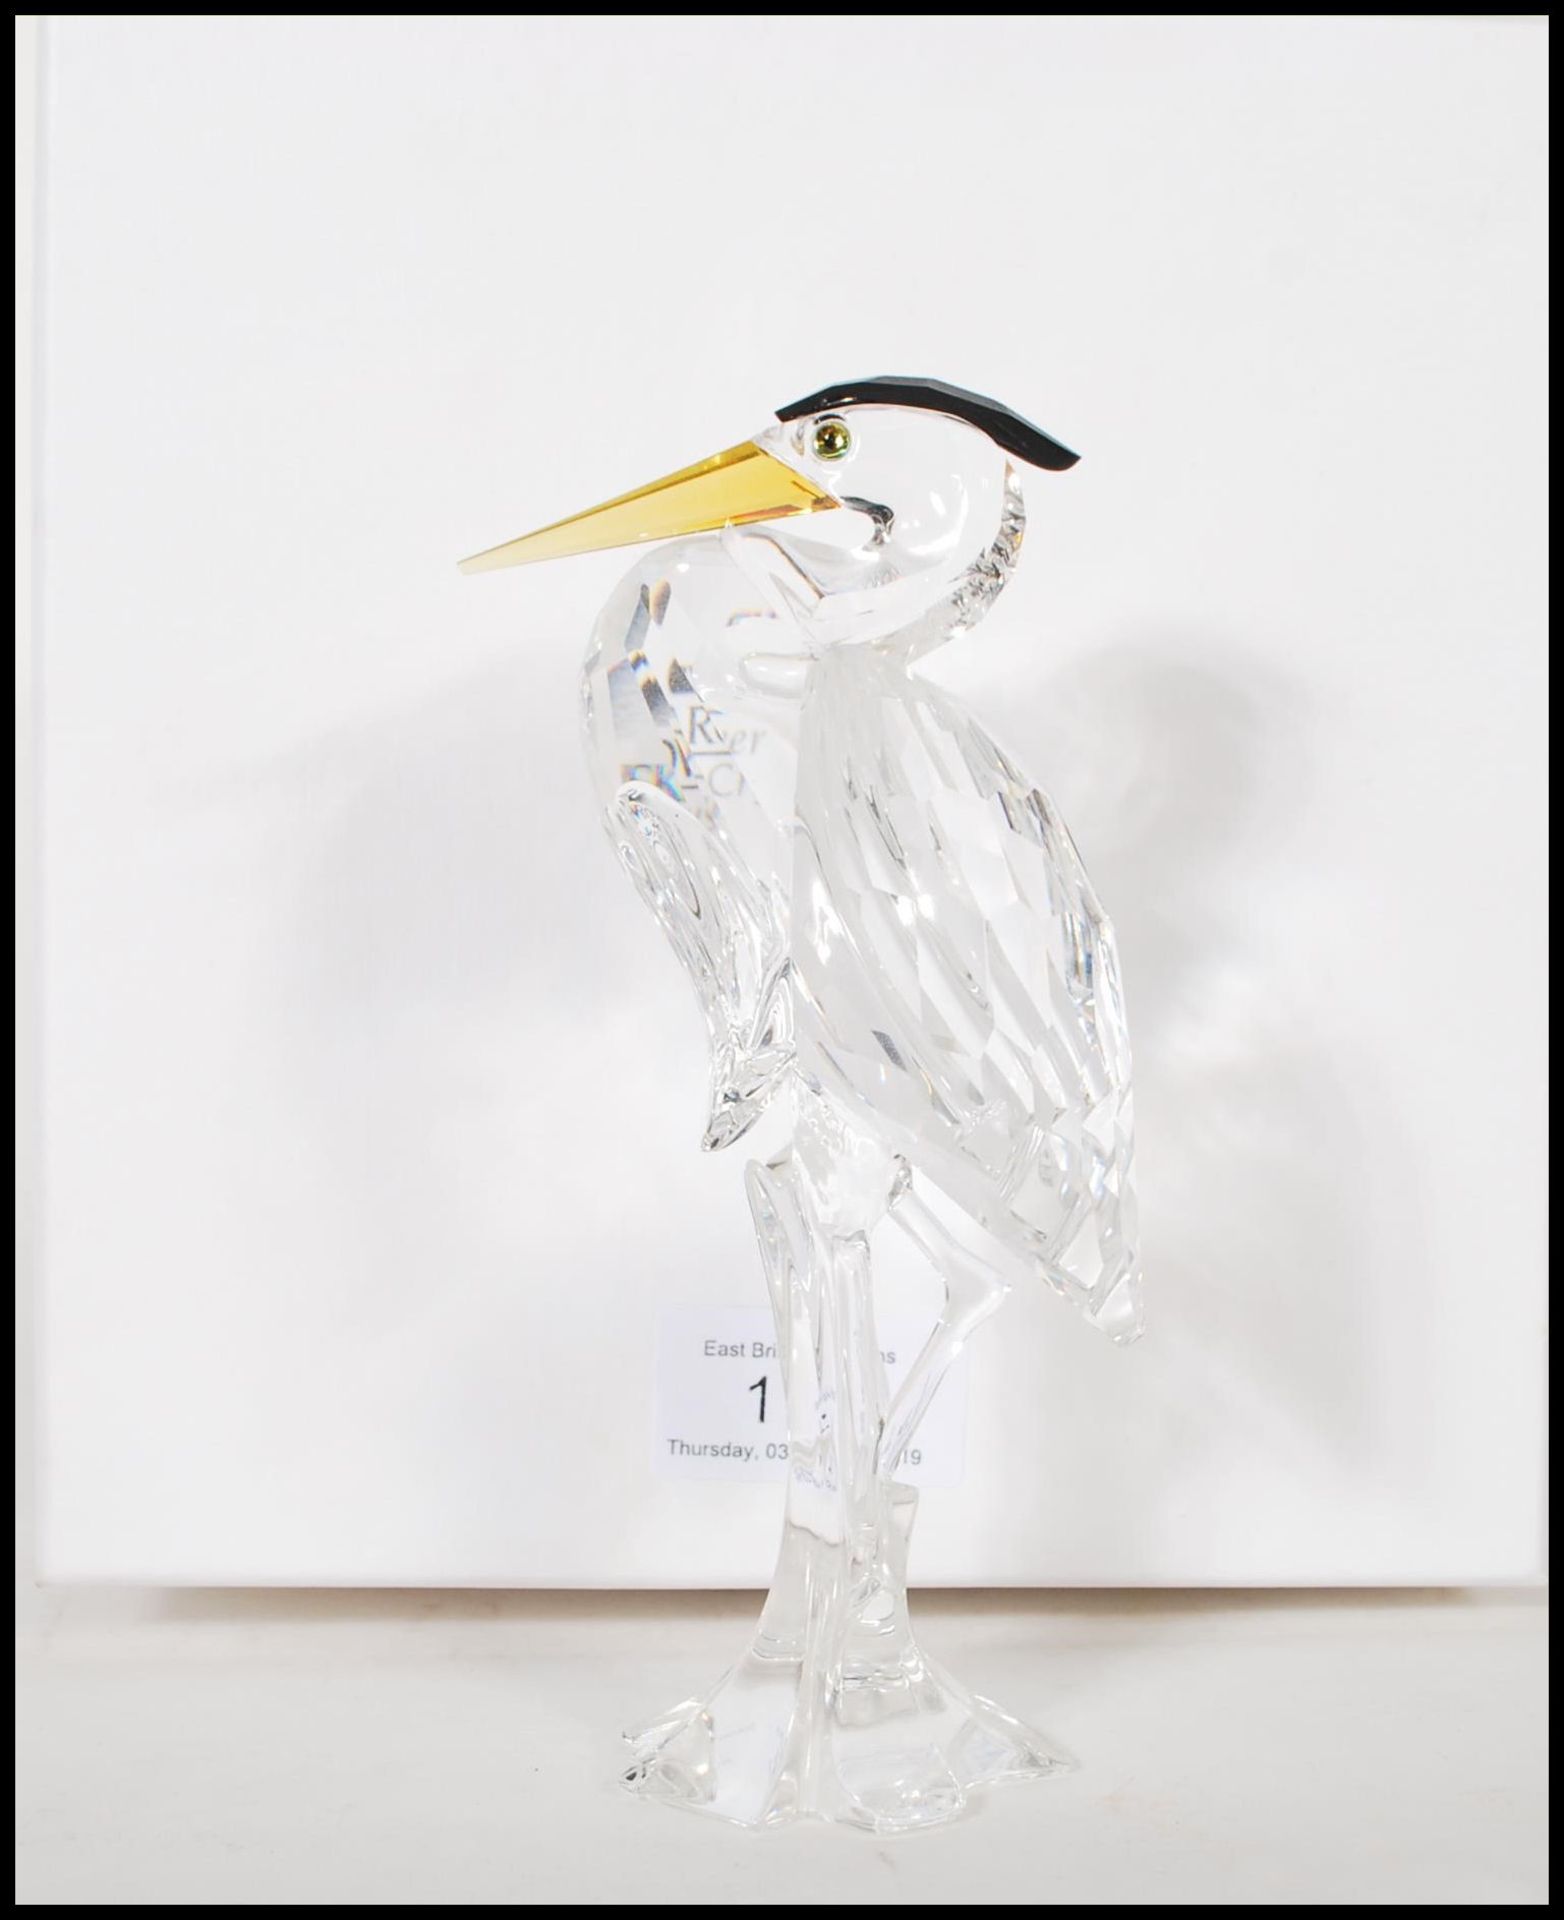 Swarovski - Silver Crystal - a cut glass crystal figurine of a Heron / crane raised on a